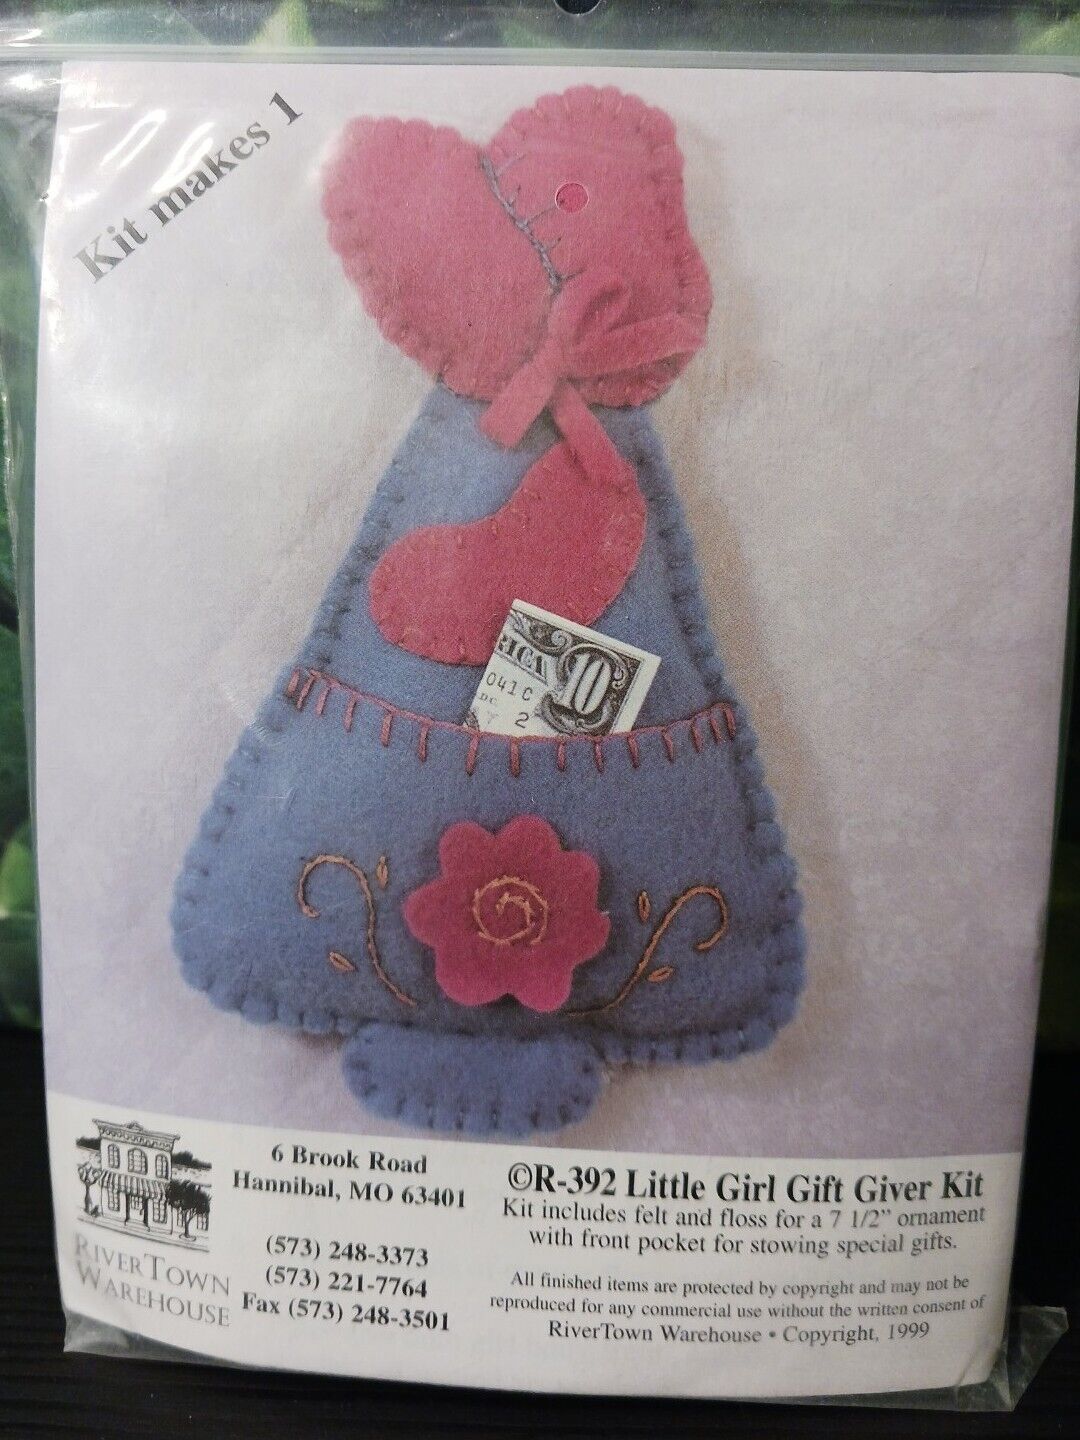 Felt Ornament Kit Little Girl Gift Giver Rivertown Warehouse Sunbonnet Girl NEW